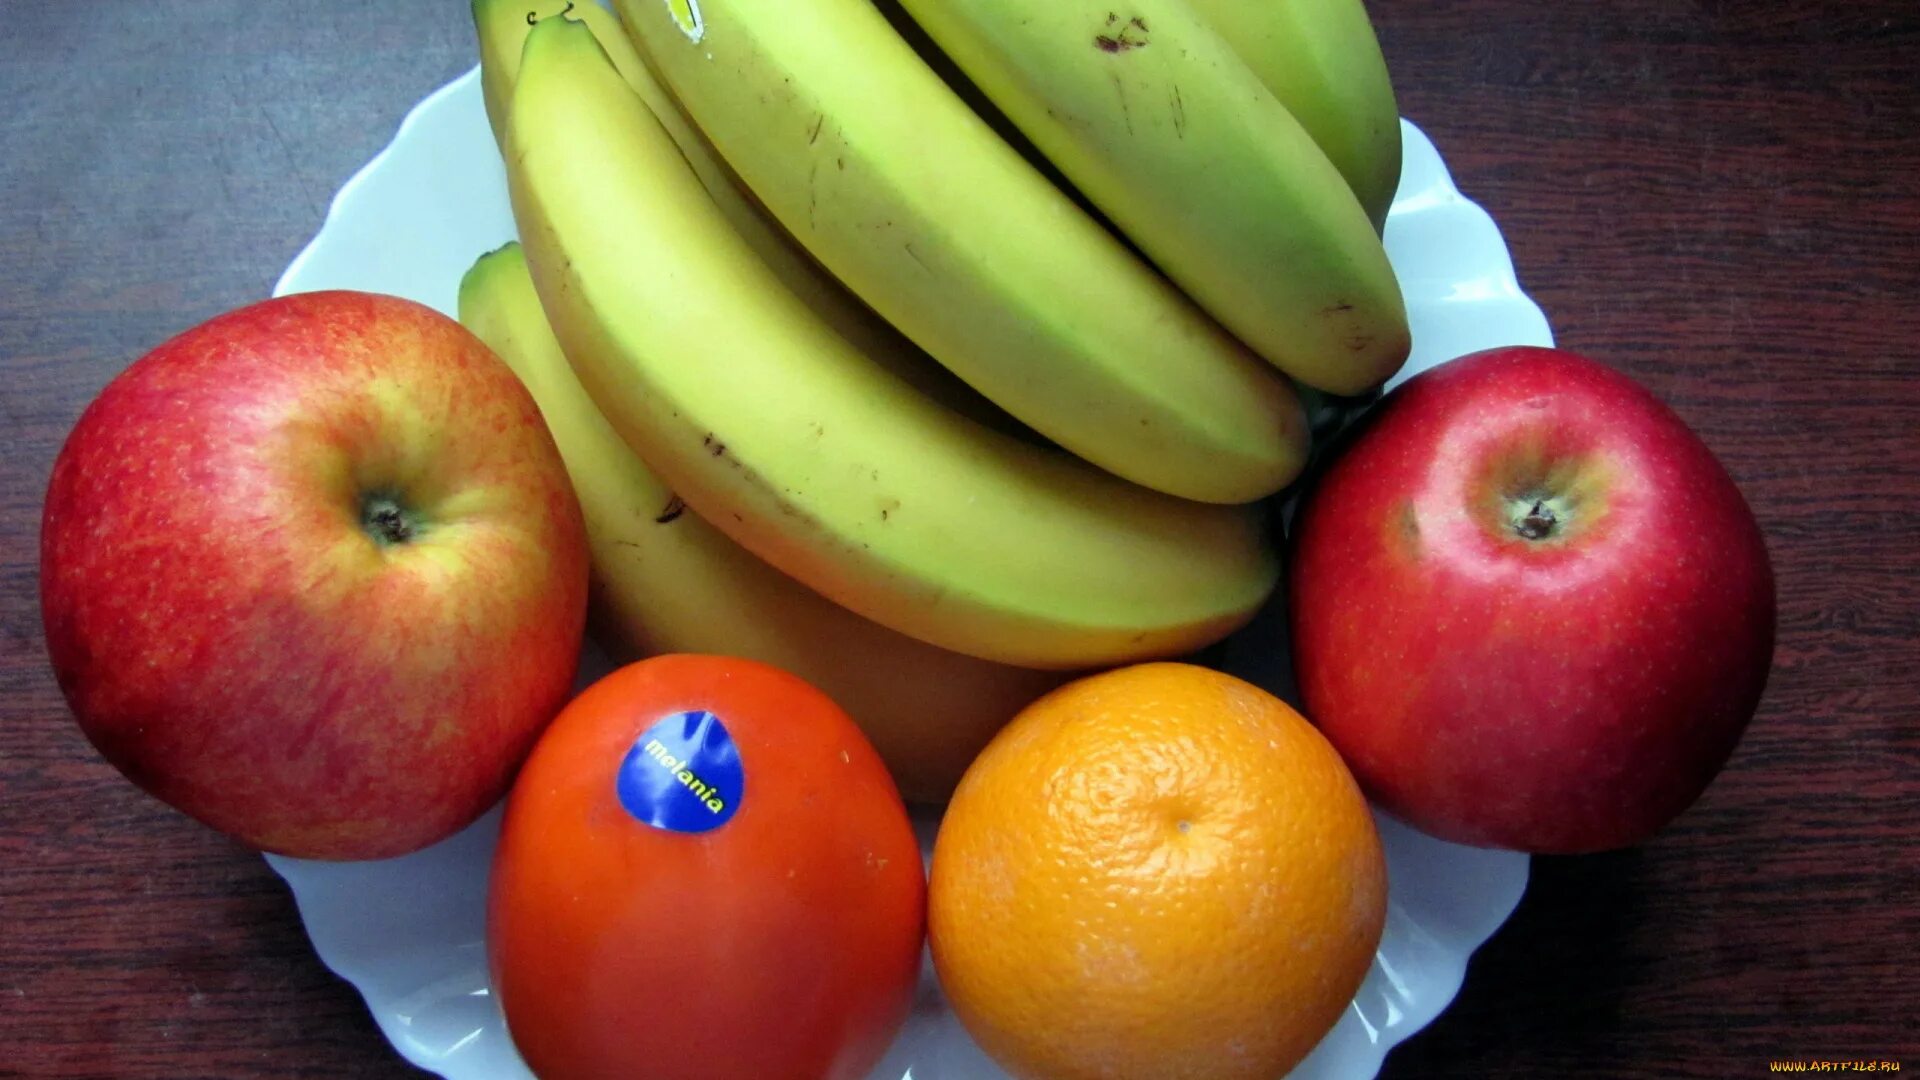 I like bananas apples. Фрукты. Фрукты бананы яблоки. Яблоко и апельсин. Фрукты апельсин банан.